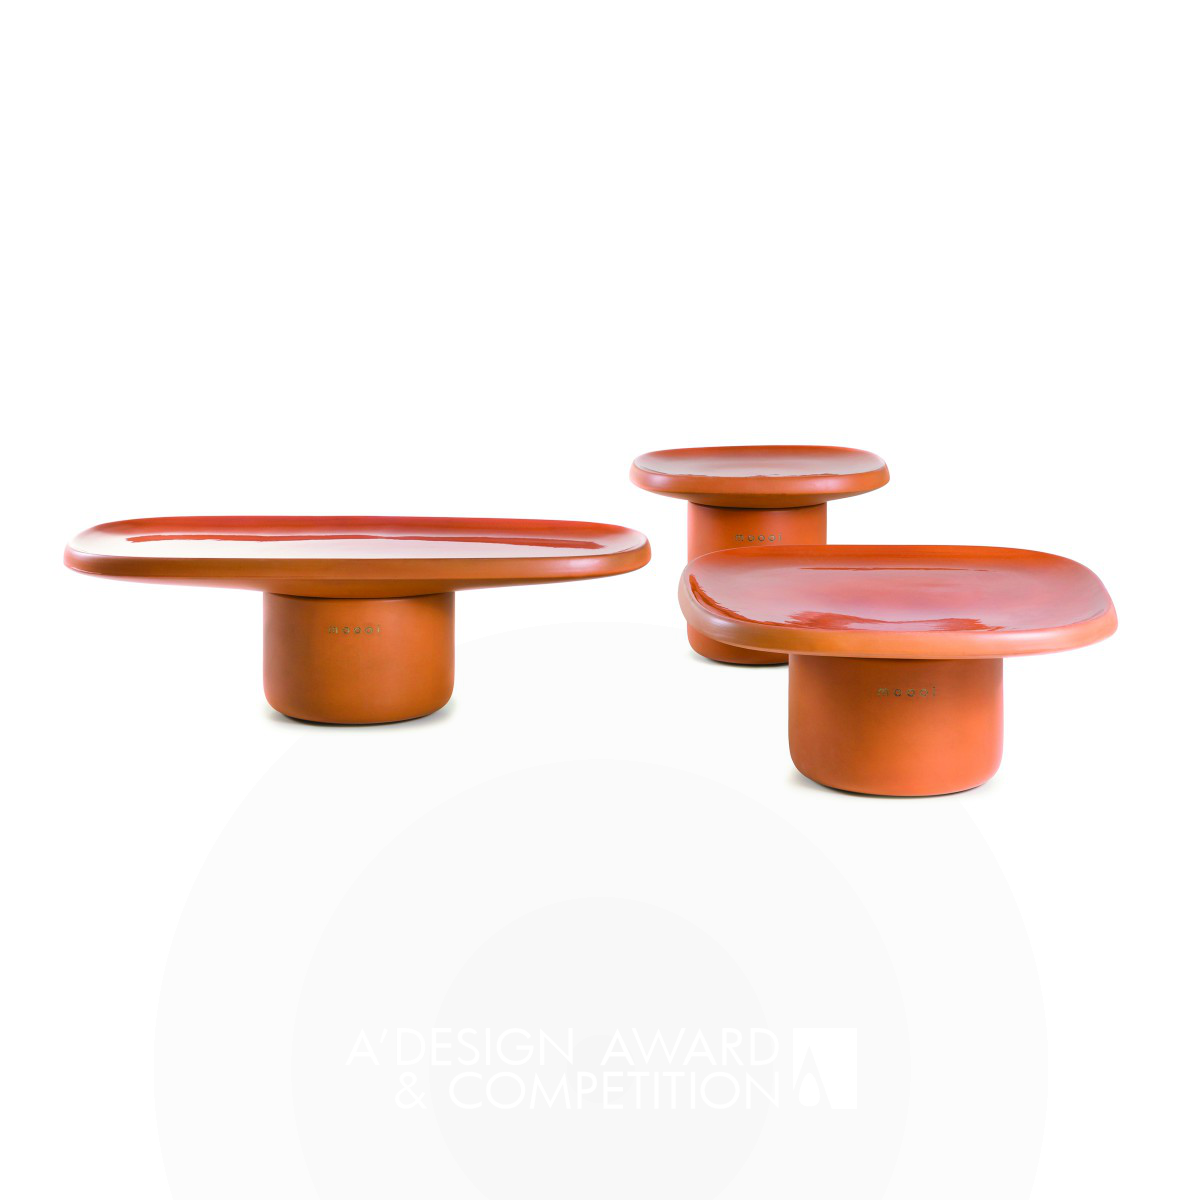 Obon: Tavoli in Ceramica Ispirati alla Terracotta